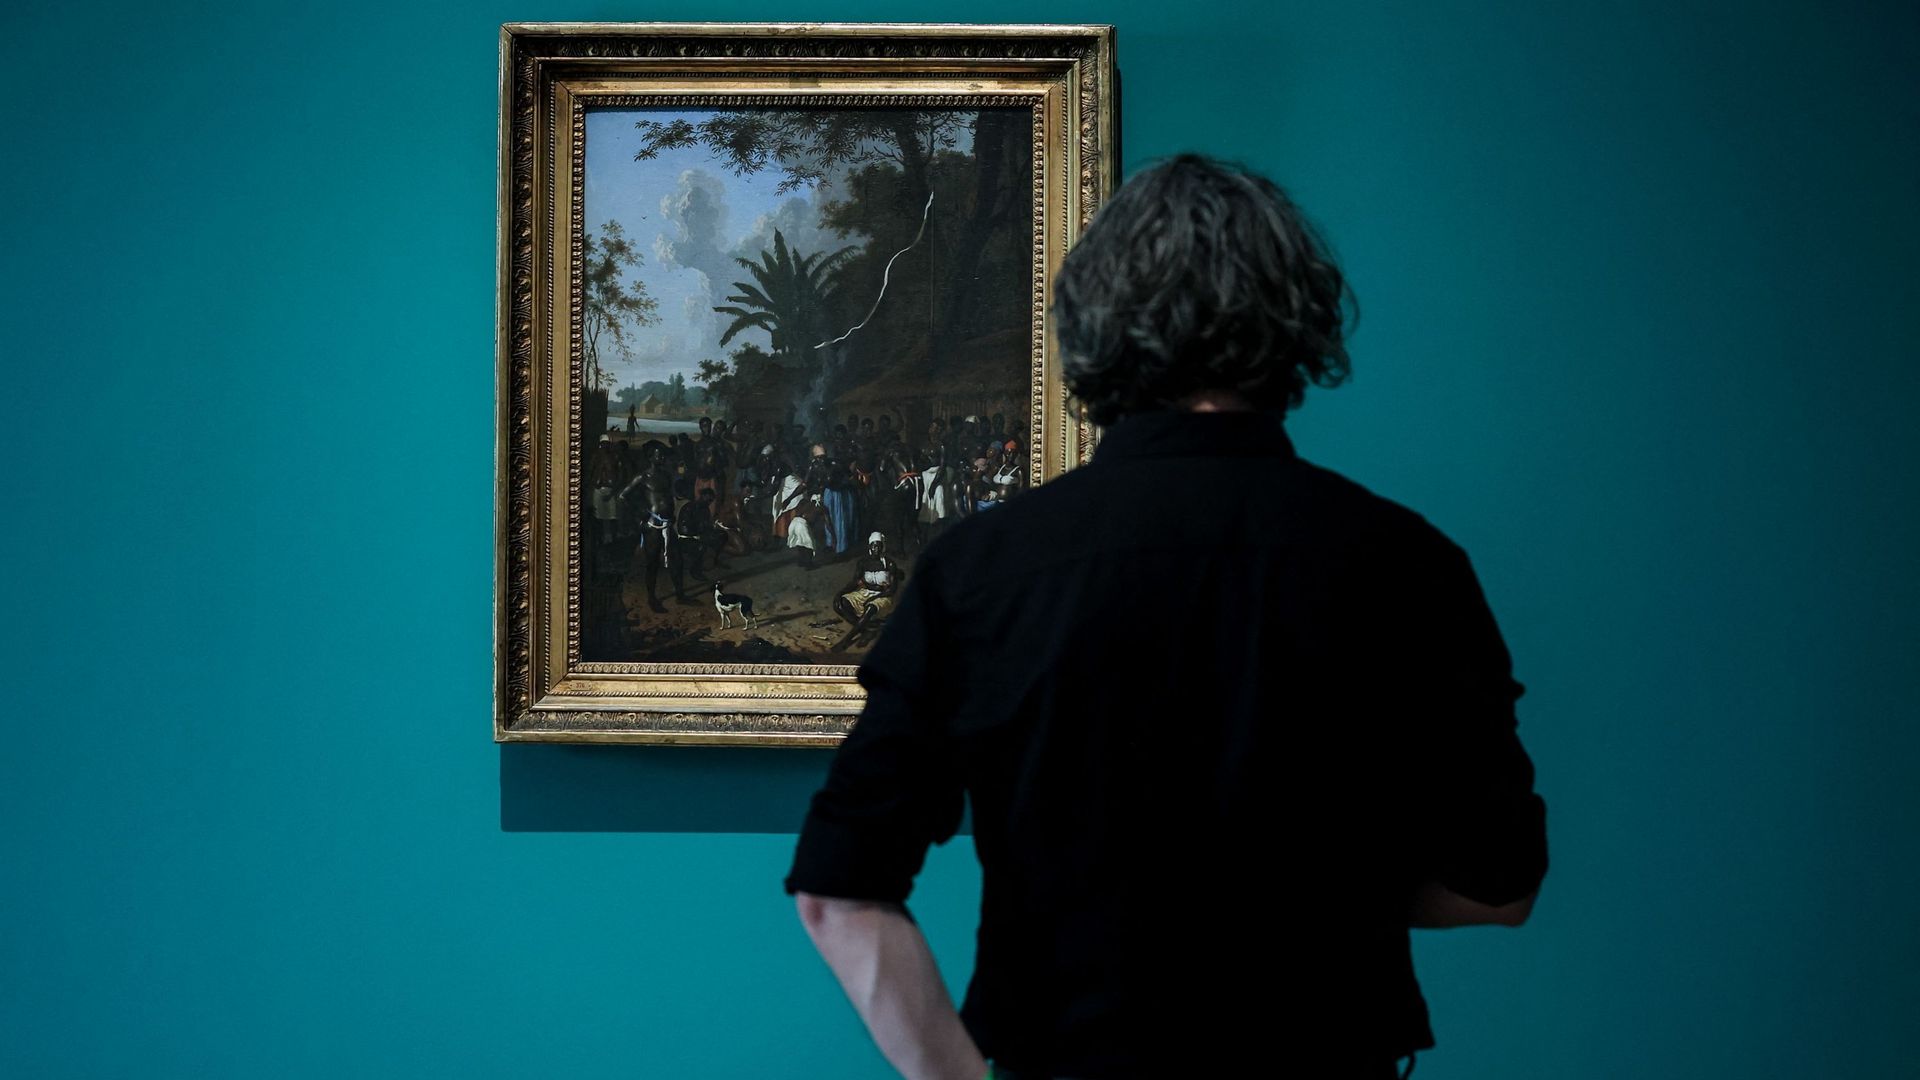 Visiteur face à un tableau de l’exposition "Slavery" du Rijksmuseum d’Amsterdam